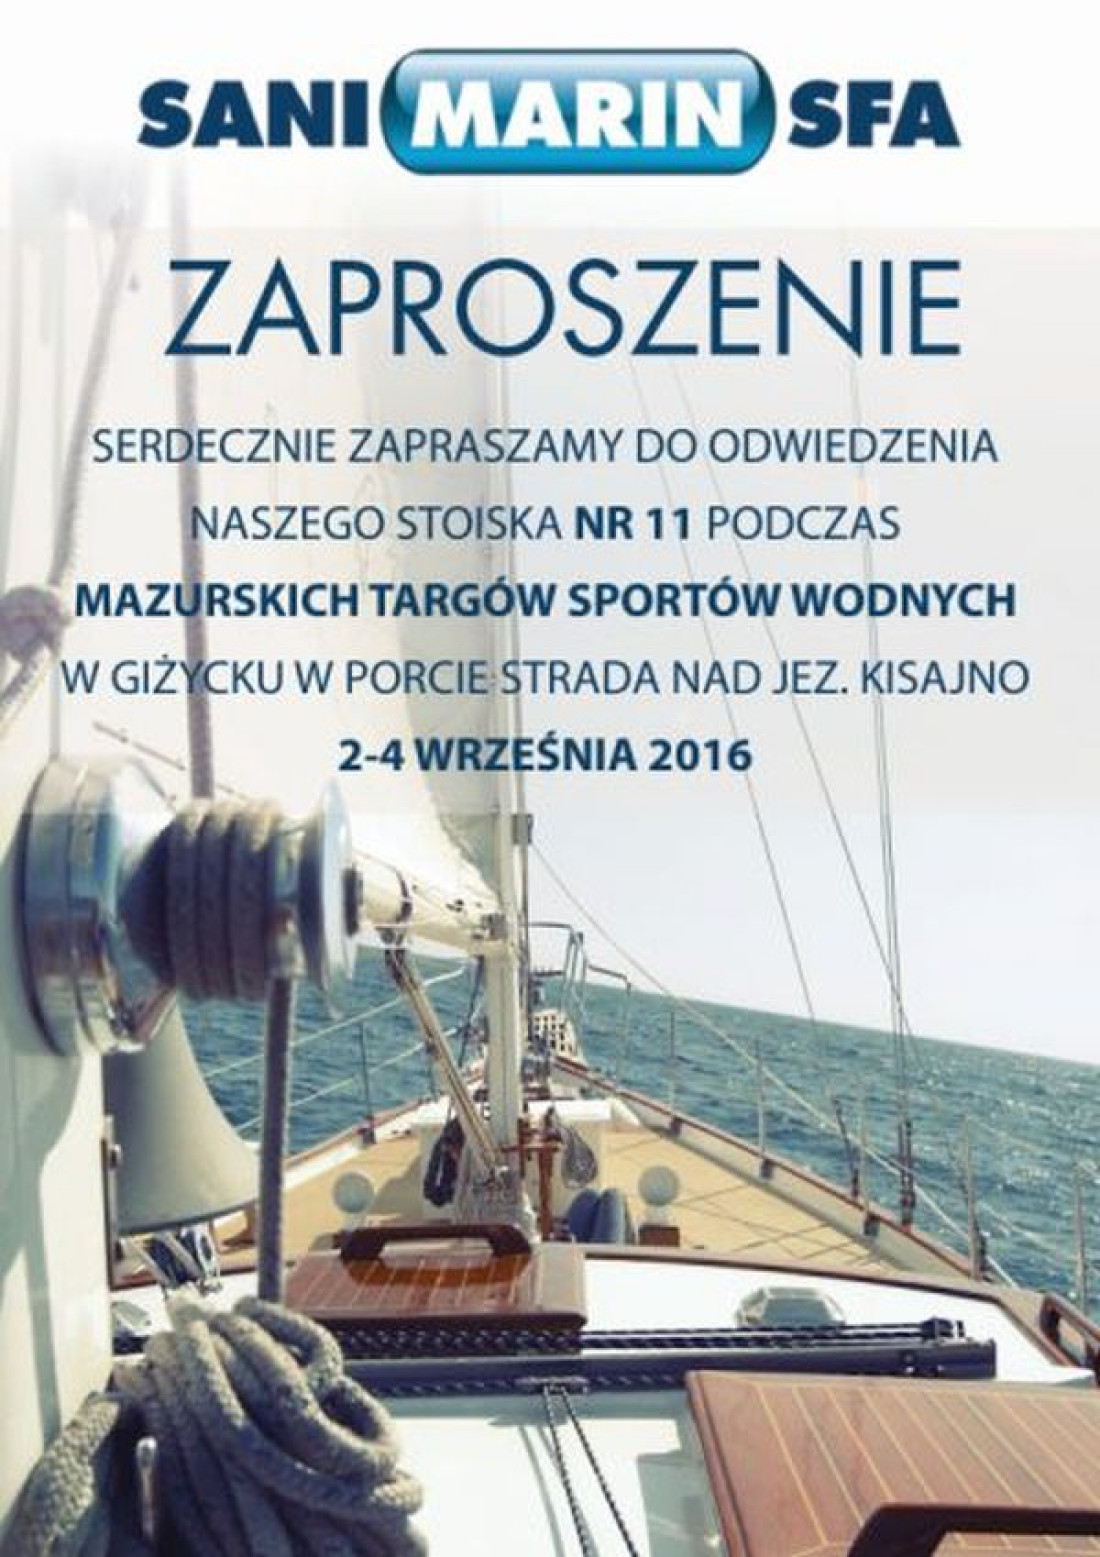 SANIMARIN®SFA na Mazurskich Targach Sportów Wodnych 2-4.09.2016